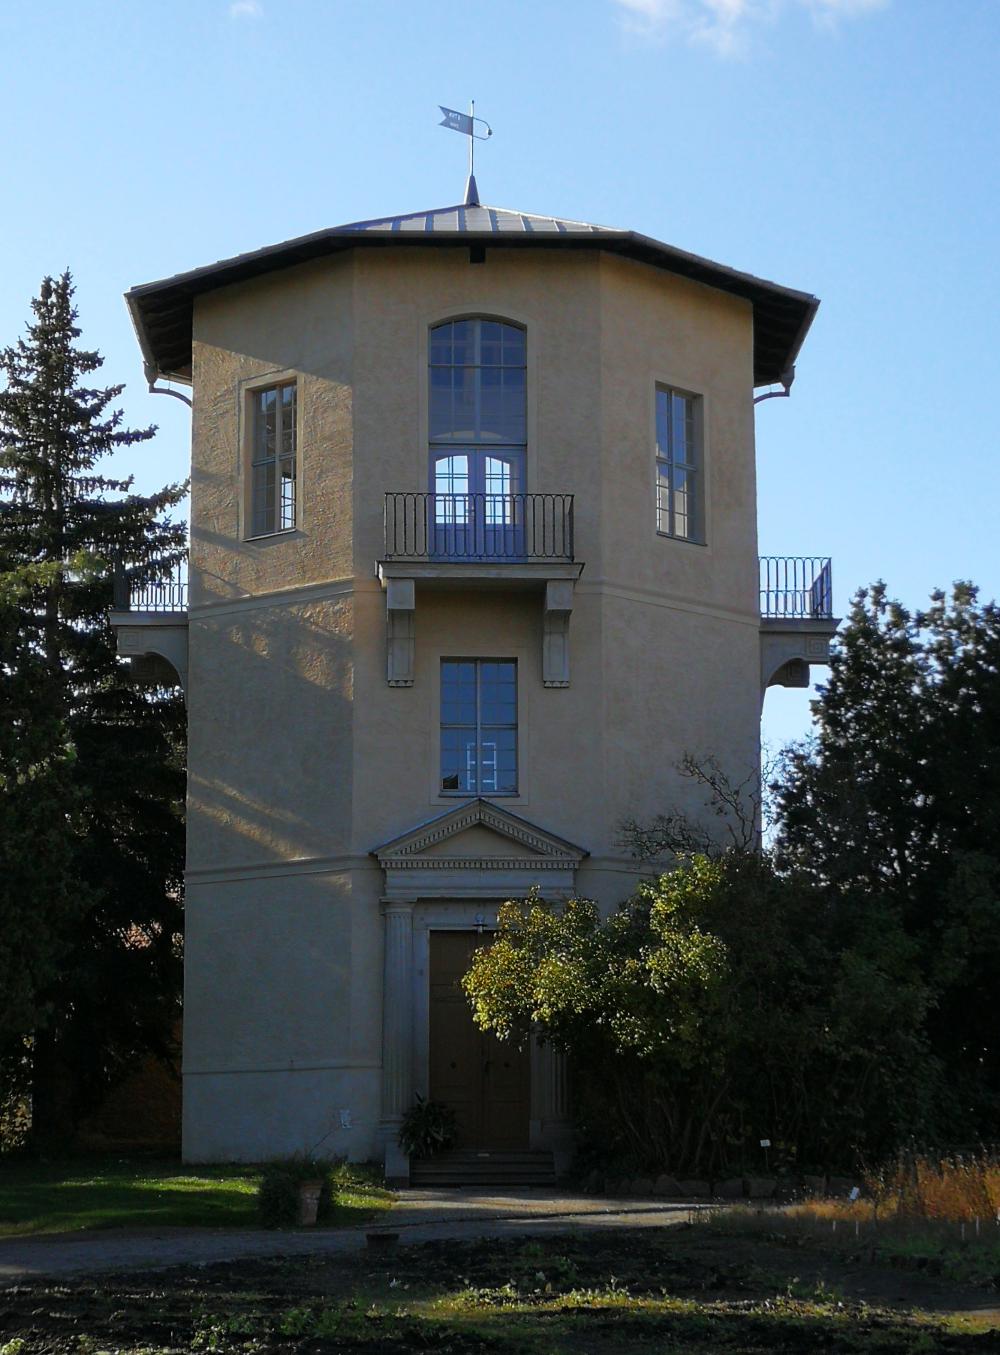 Observatory Halle an der Saale (photo: Gudrun Wolf